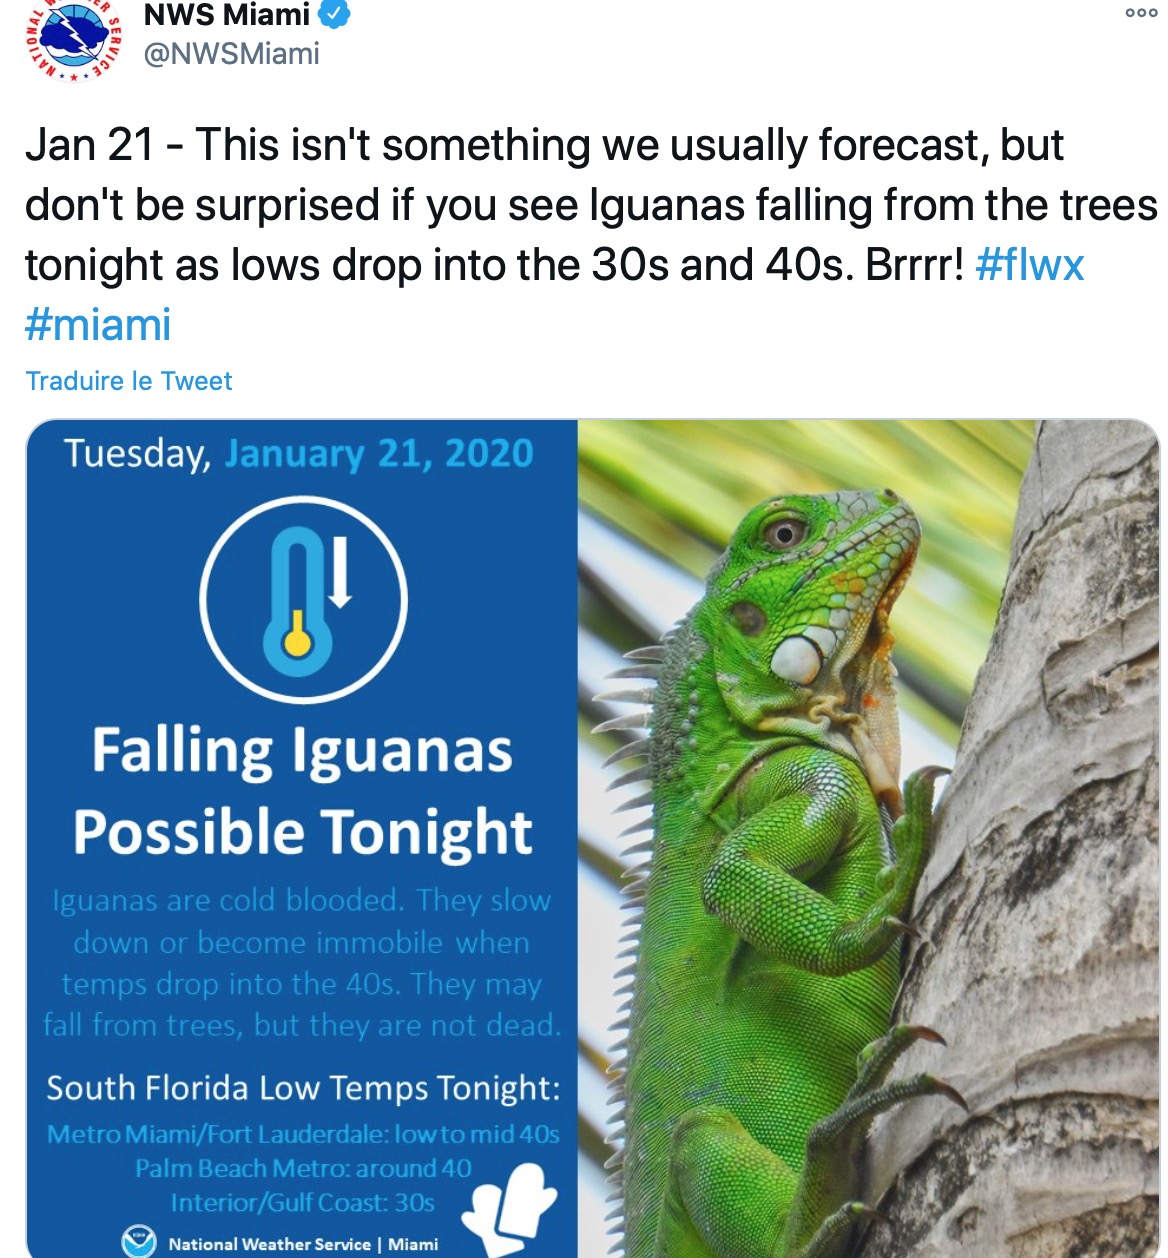  Une autre pluie d'iguanes en Floride au début de l'année 2020 @Twitter